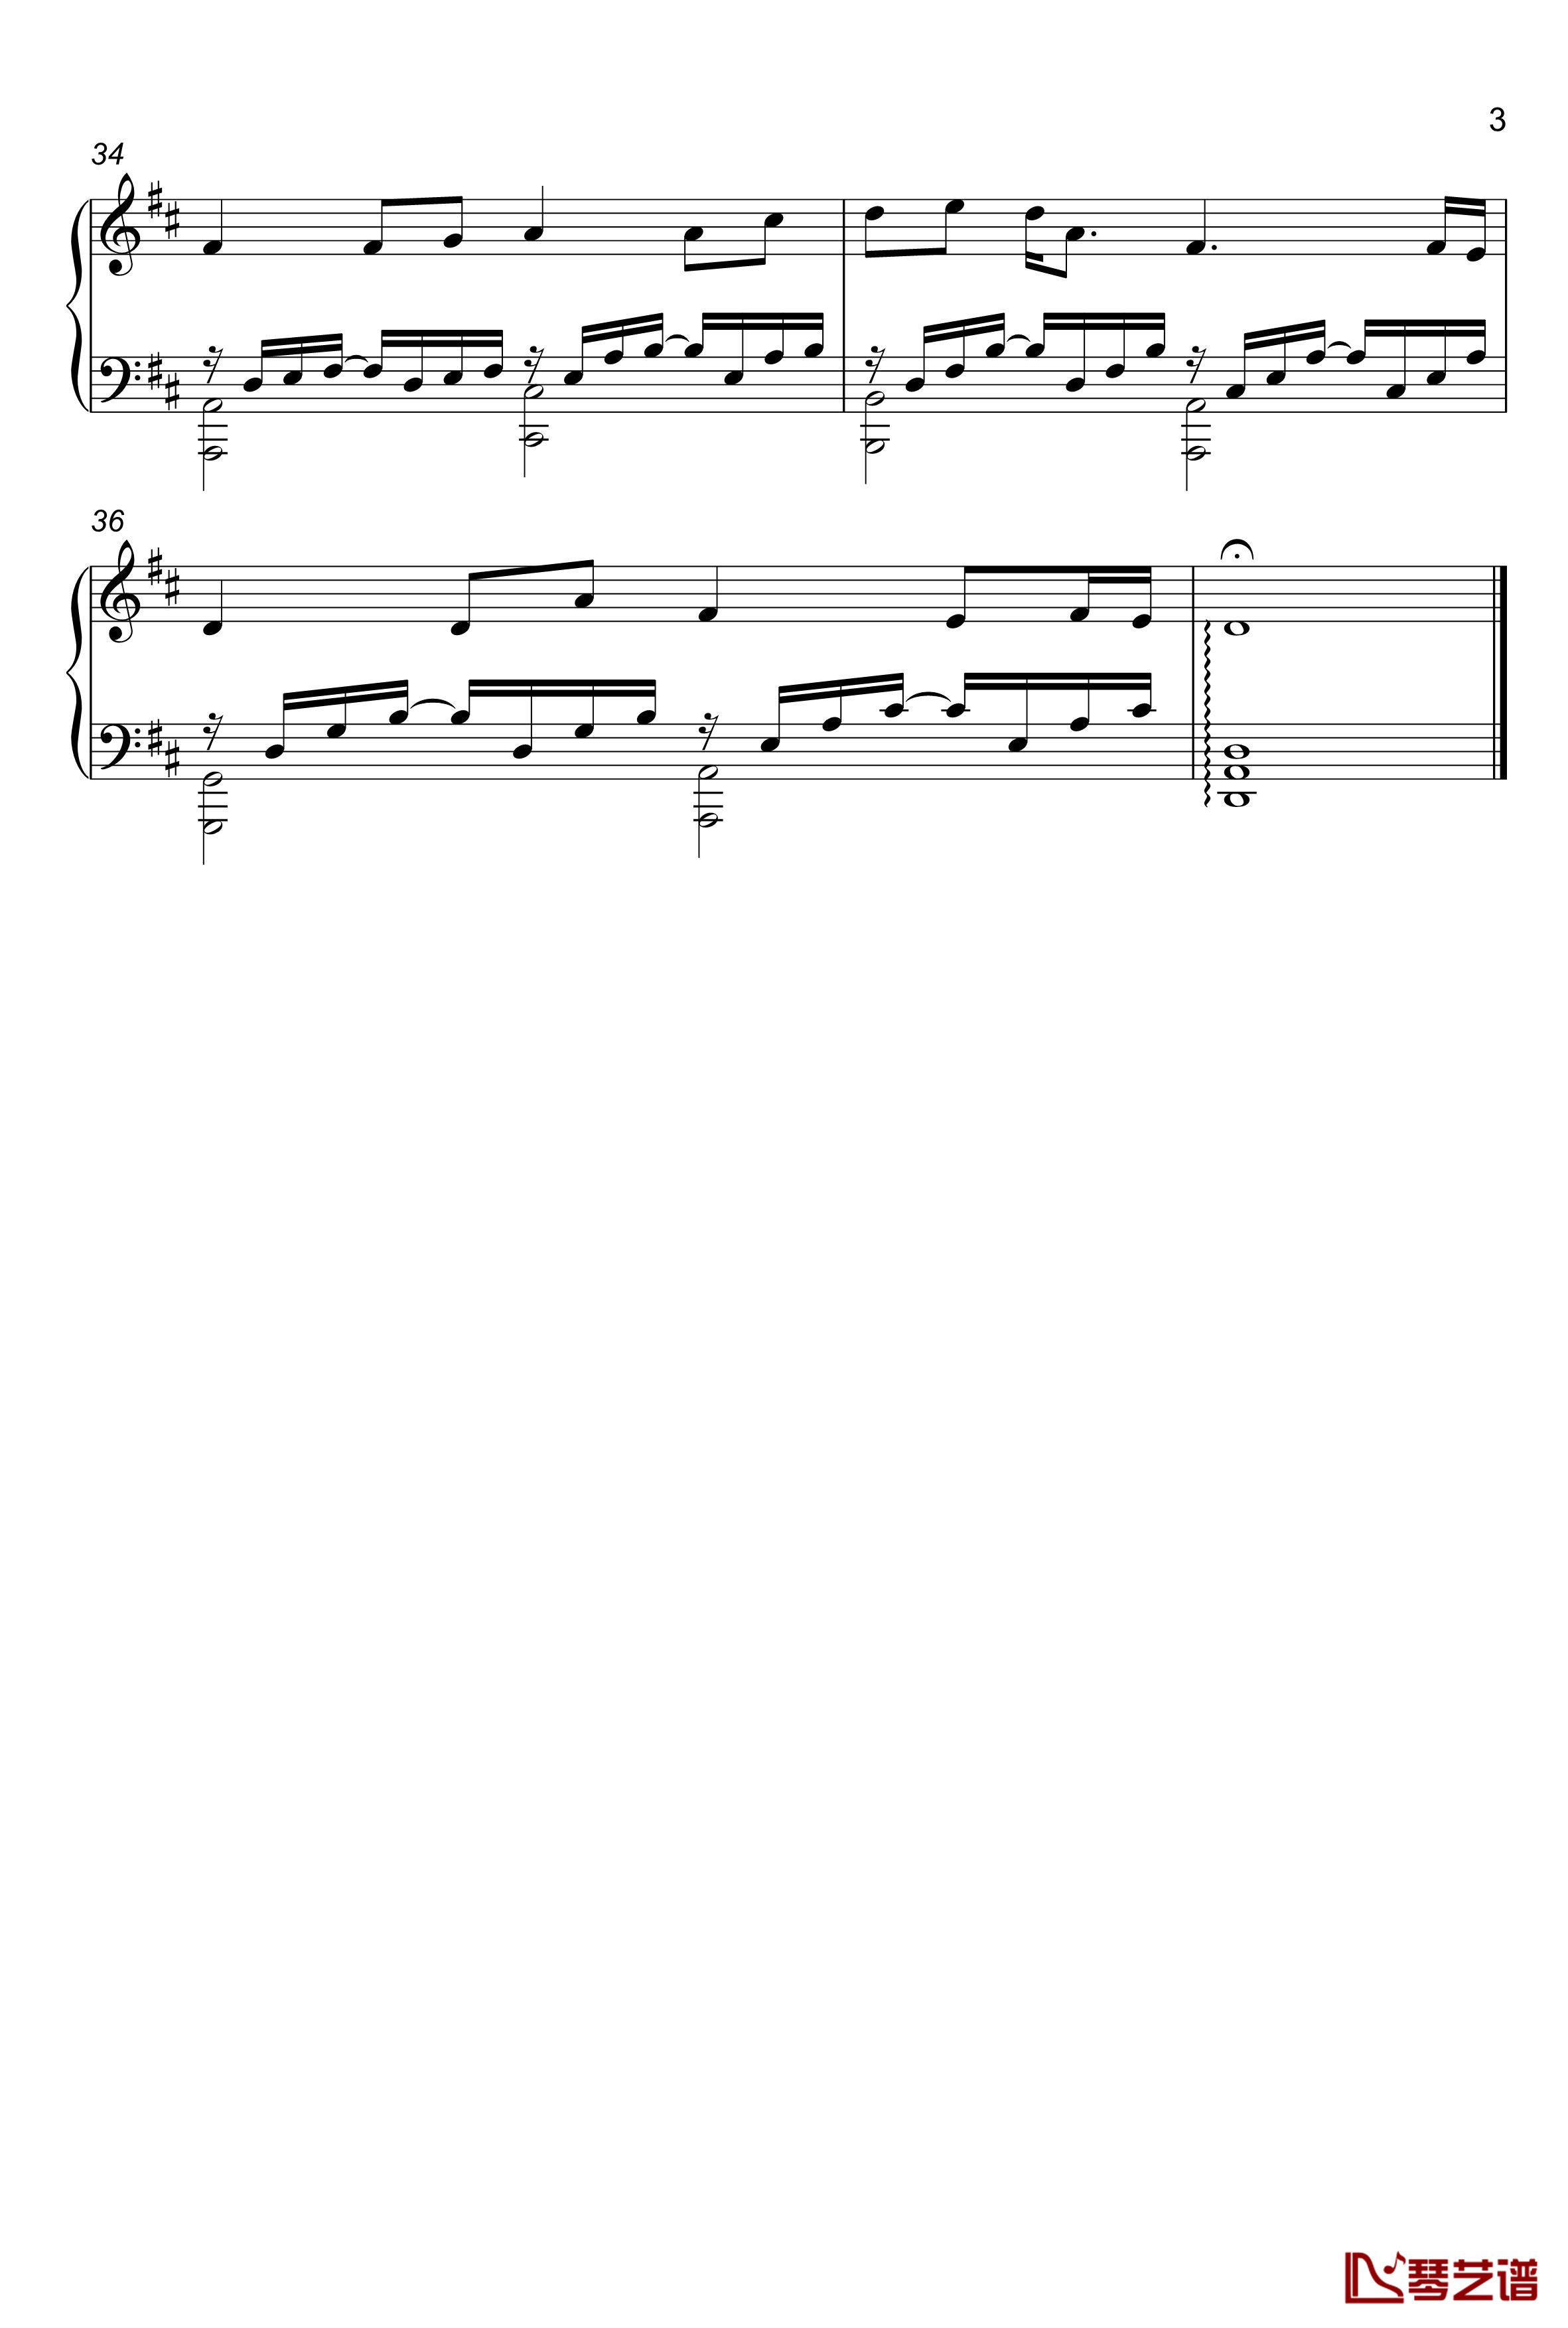 恋色旋律-有你的幸福钢琴谱-vocaloid-vocaloid3